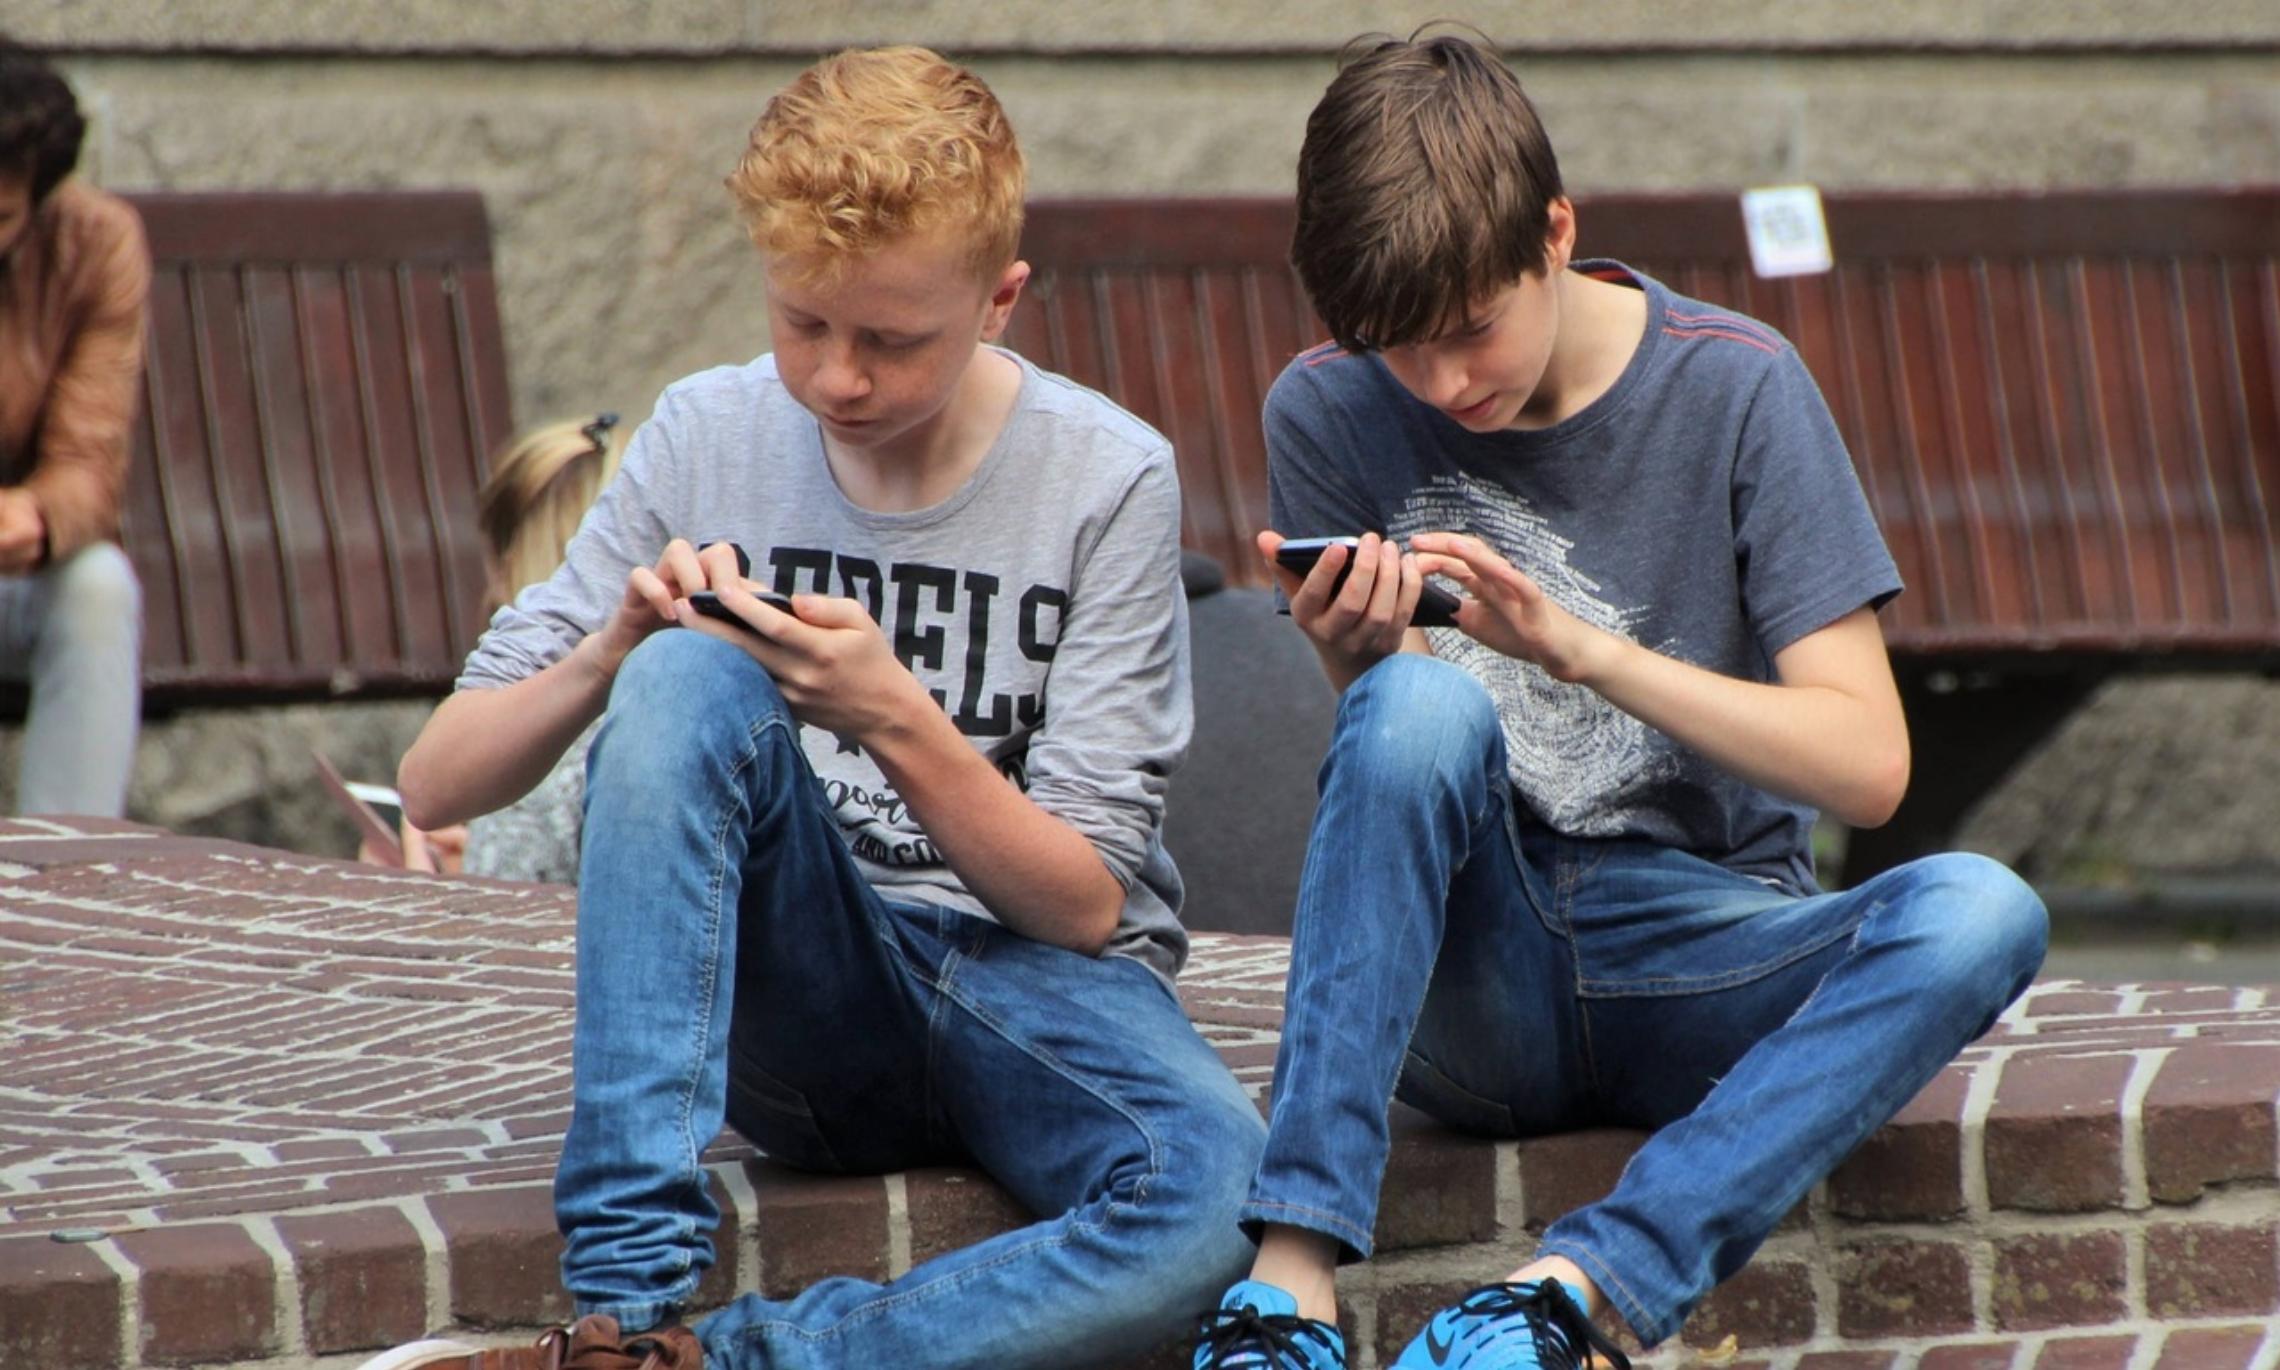 Young boys 2. Подросток. Подросток со смартфоном. Подросток сидит. Подросток сидит в телефоне.